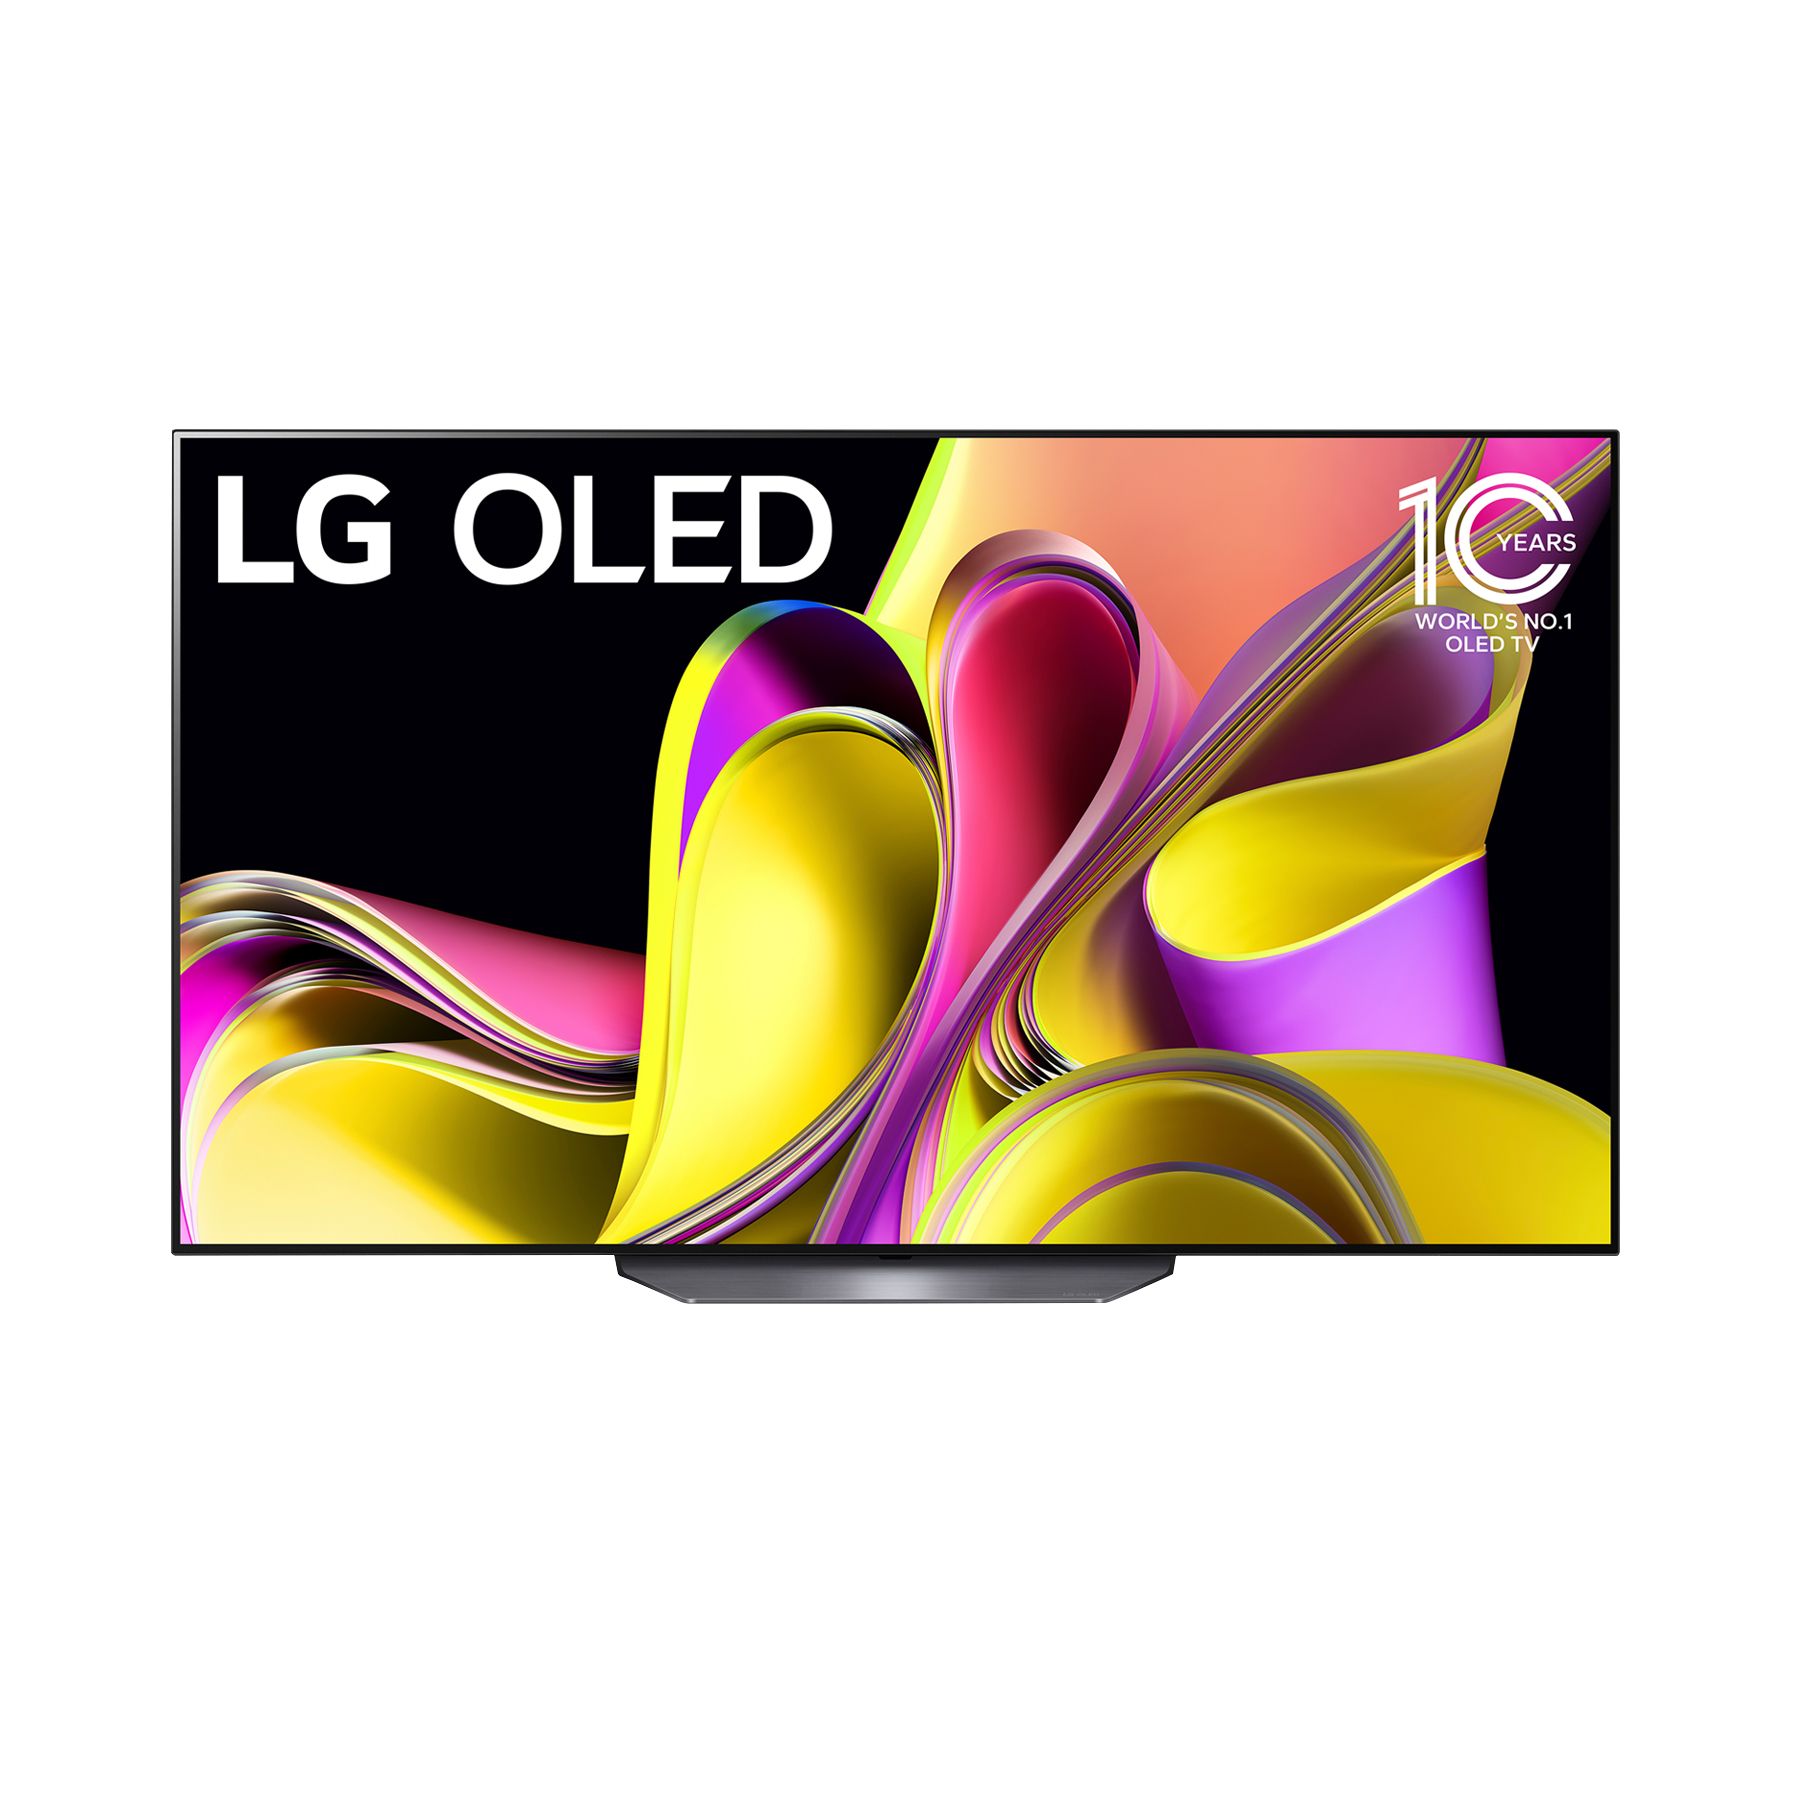 LG 43 Inch Class UQ8000 AUB series LED 4K UHD Smart webOS 22 w/ ThinQ AI TV